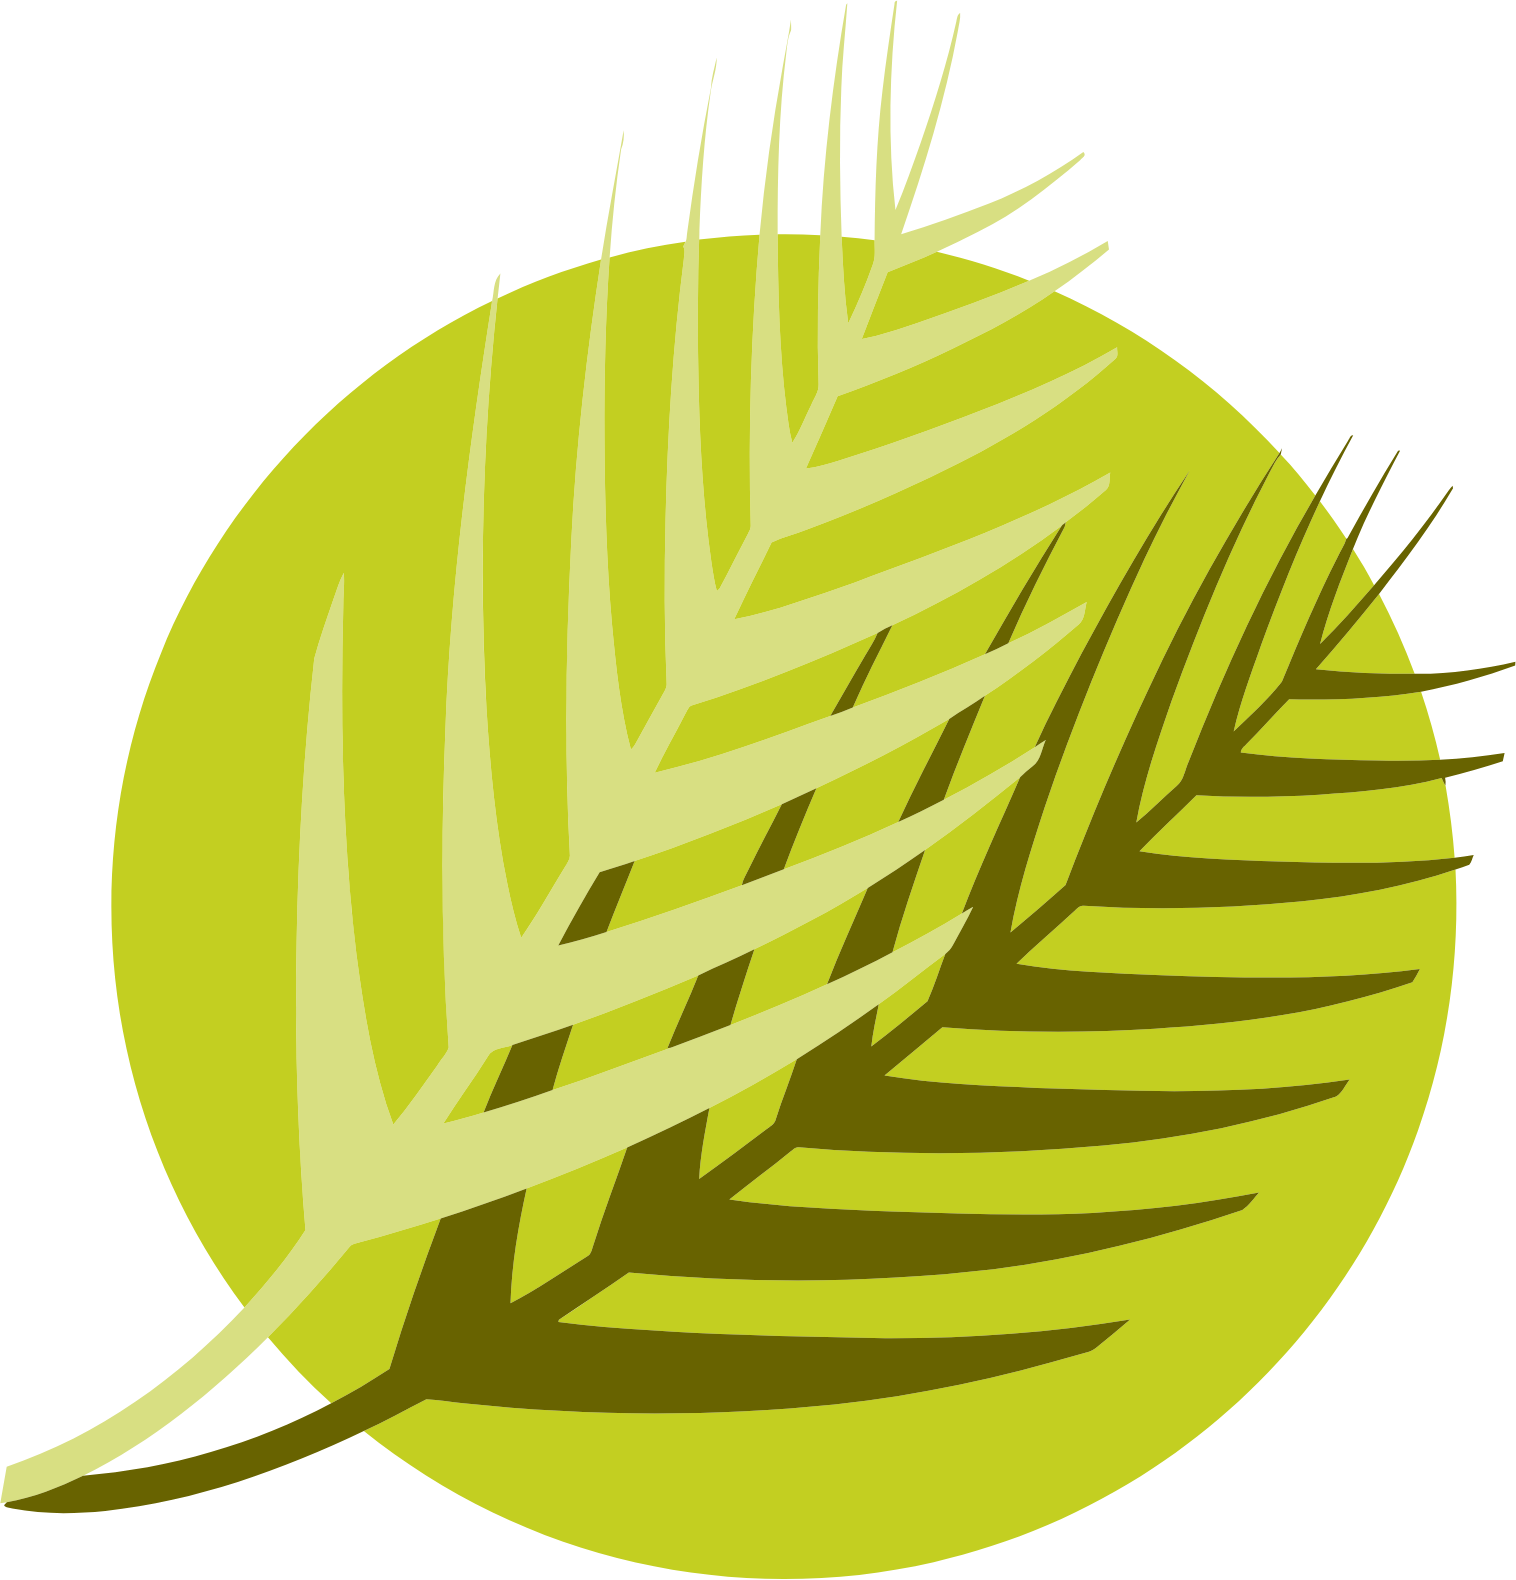 Al Meera Consumer Goods Company logo (transparent PNG)